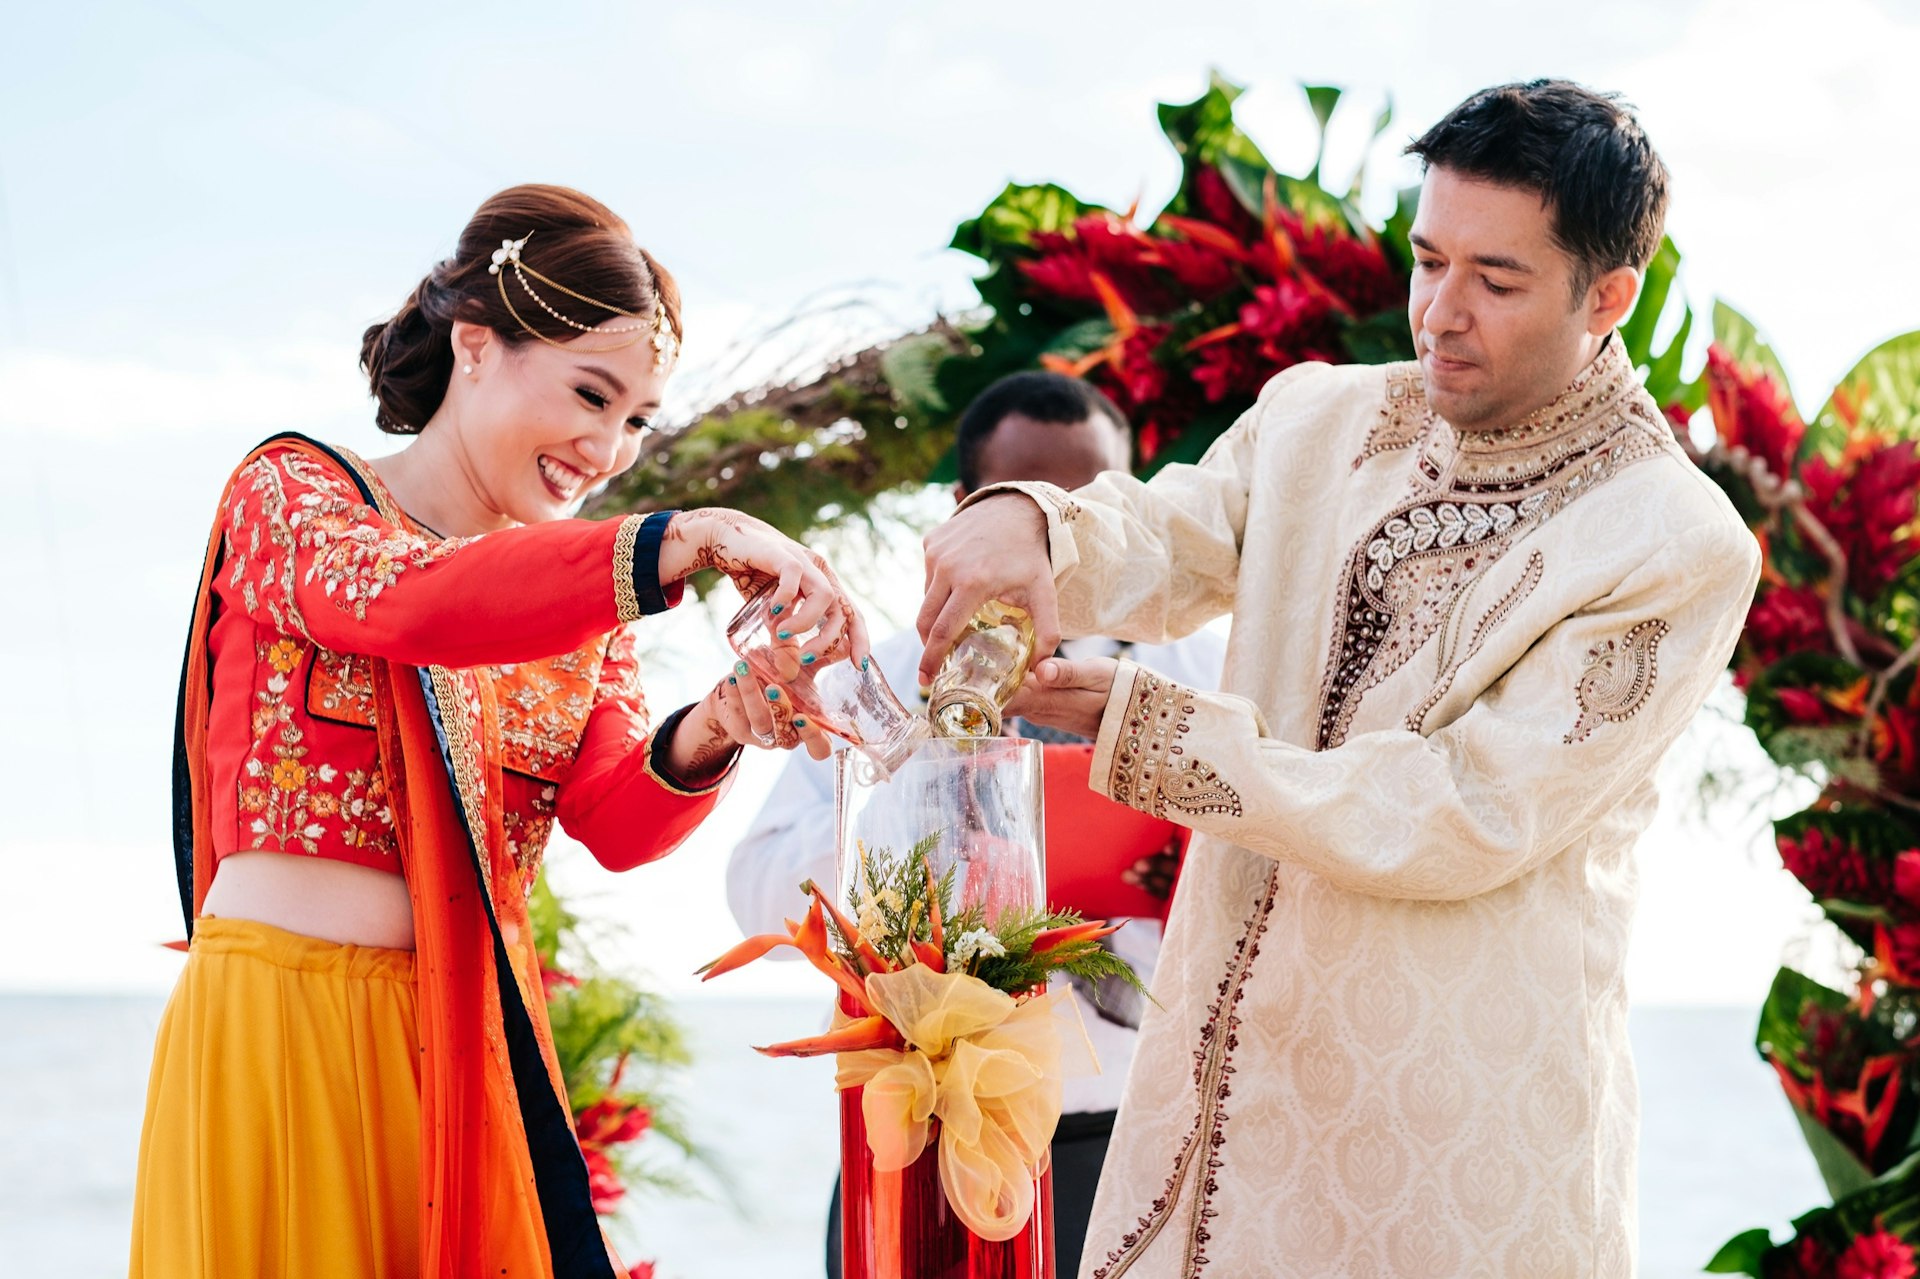 Fiji-Weddings_Ceremony.jpg